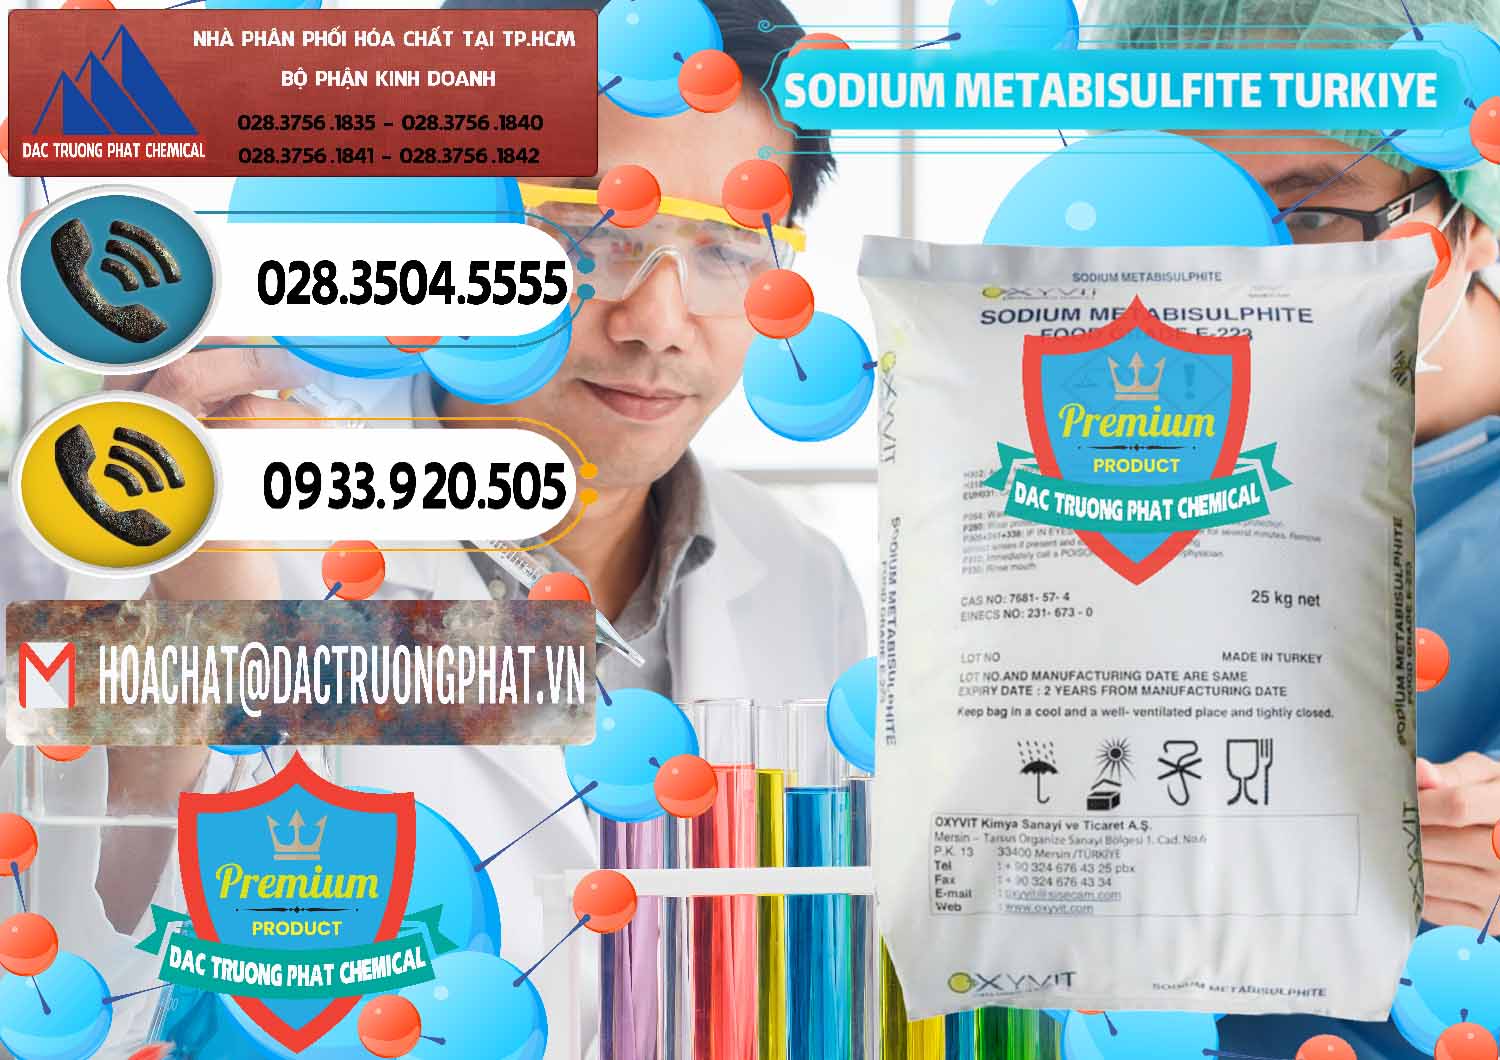 Nơi chuyên cung cấp - bán Sodium Metabisulfite - NA2S2O5 Food Grade E-223 Thổ Nhĩ Kỳ Turkey - 0413 - Cty cung cấp - phân phối hóa chất tại TP.HCM - hoachatdetnhuom.vn